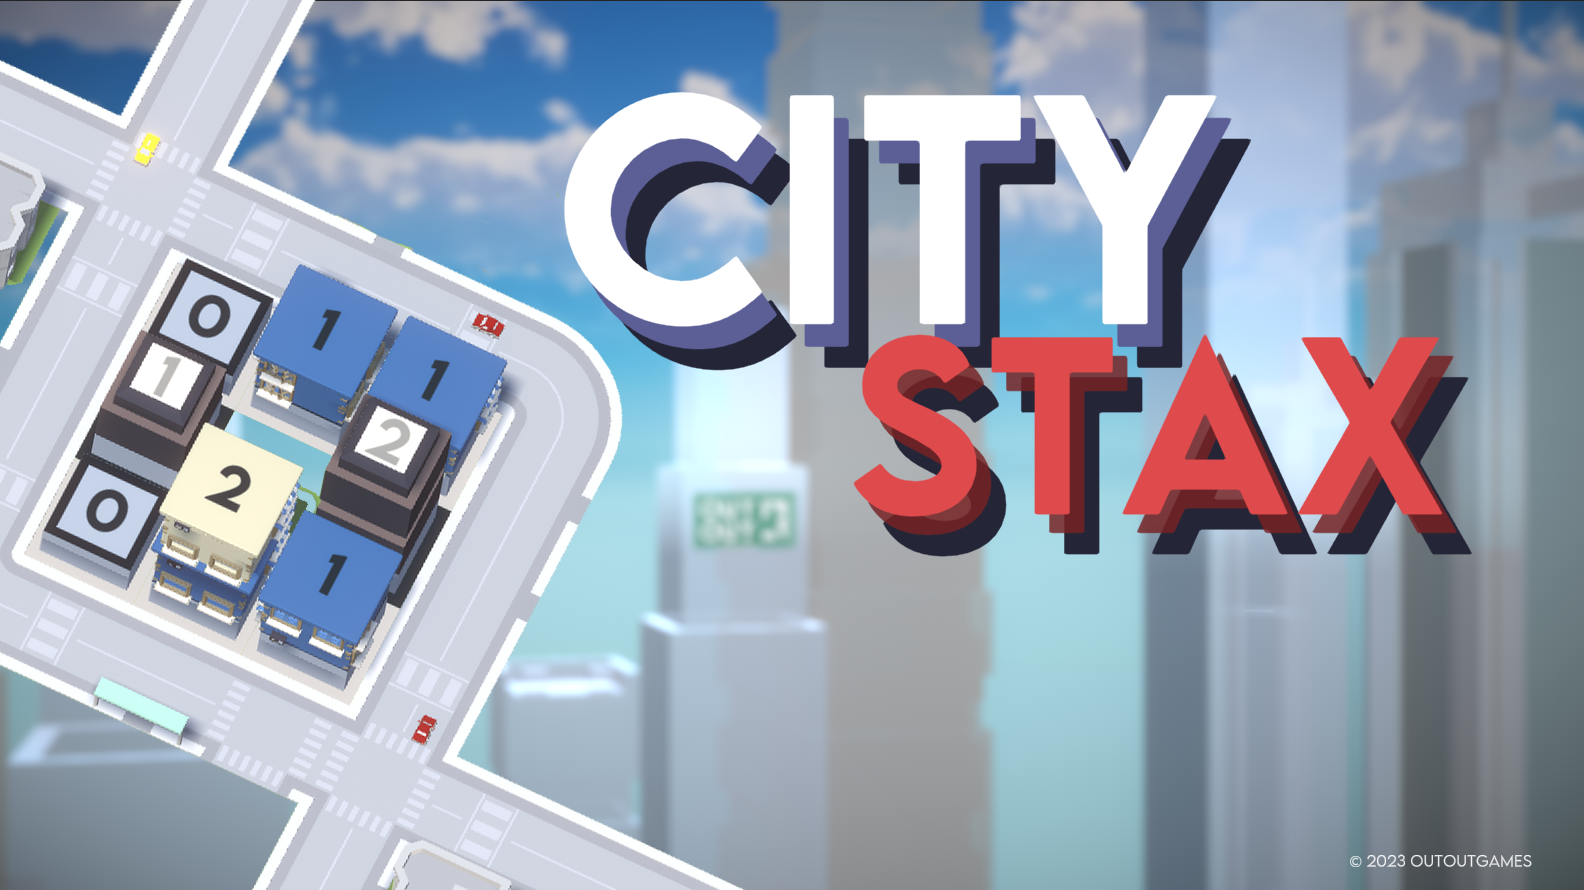 City Stax